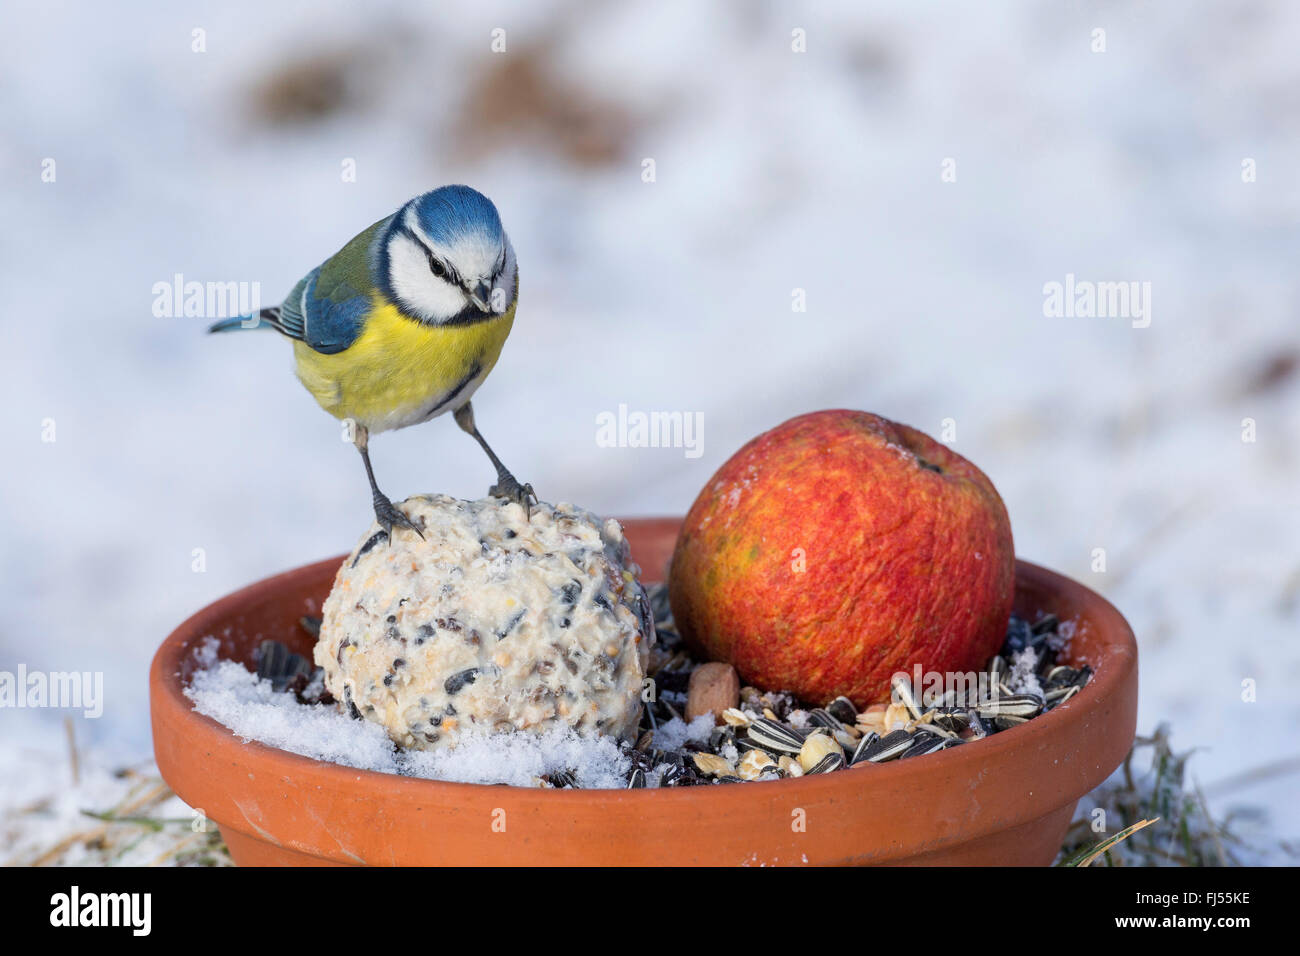 Blue Tit (Parus caeruleus, Cyanistes caeruleus), au site d'alimentation d'hiver avec apple et fat ball, Allemagne Banque D'Images